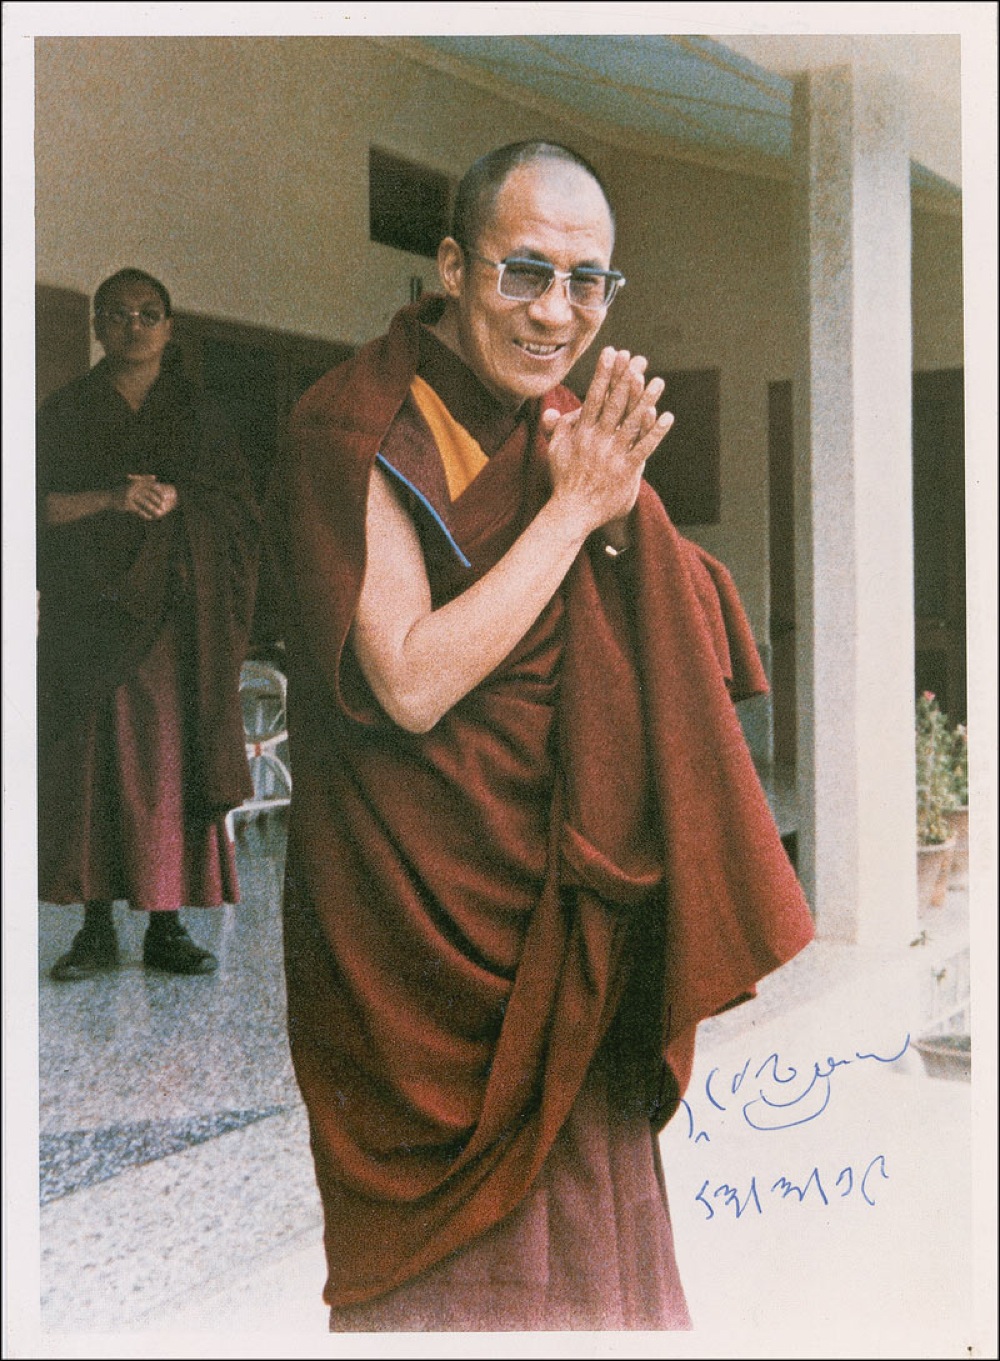 Lot #204 Dalai Lama